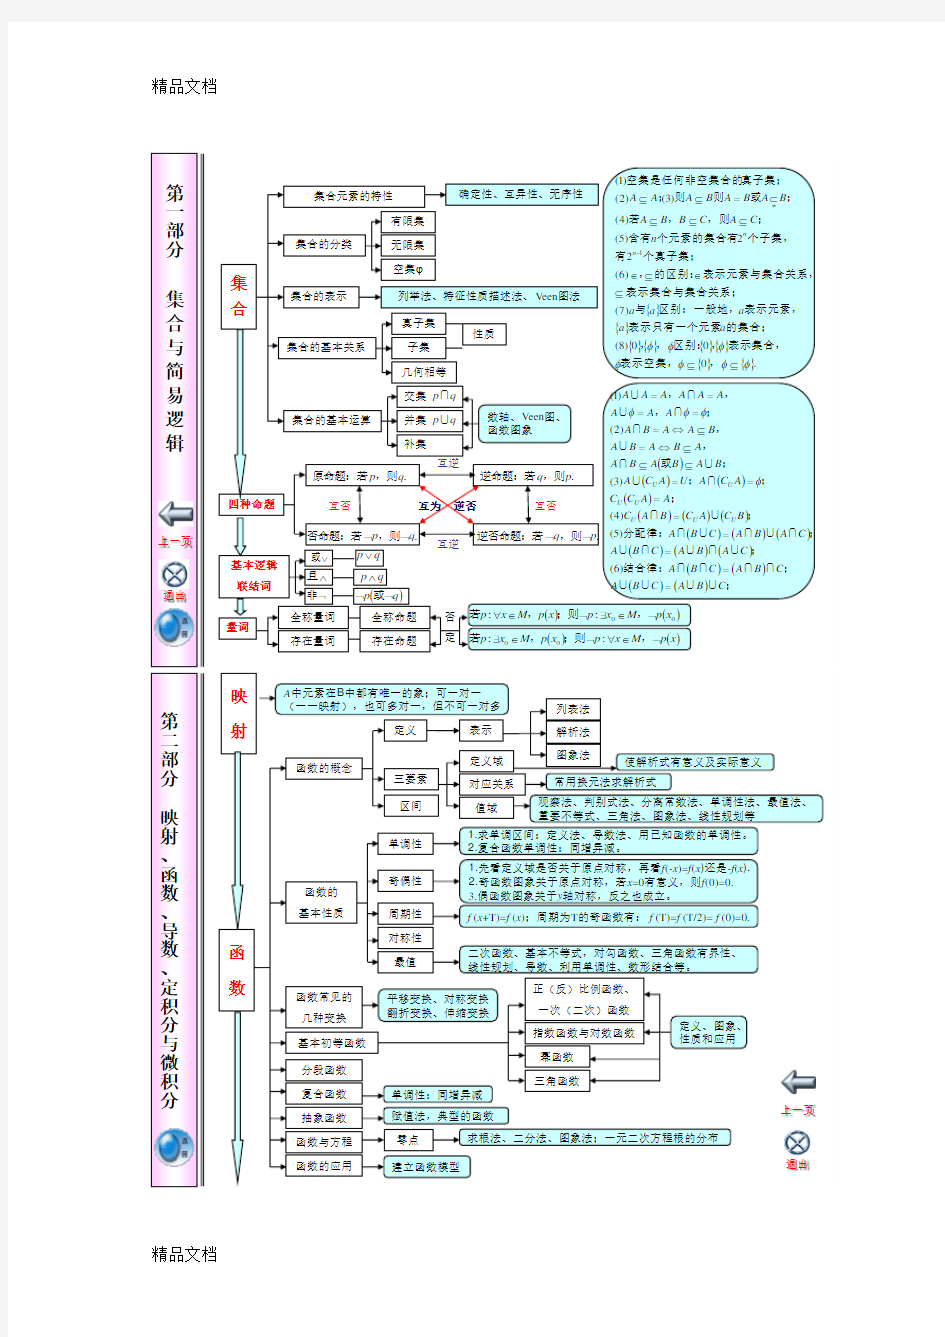 最新江苏省高中数学知识点体系框架超全超完美